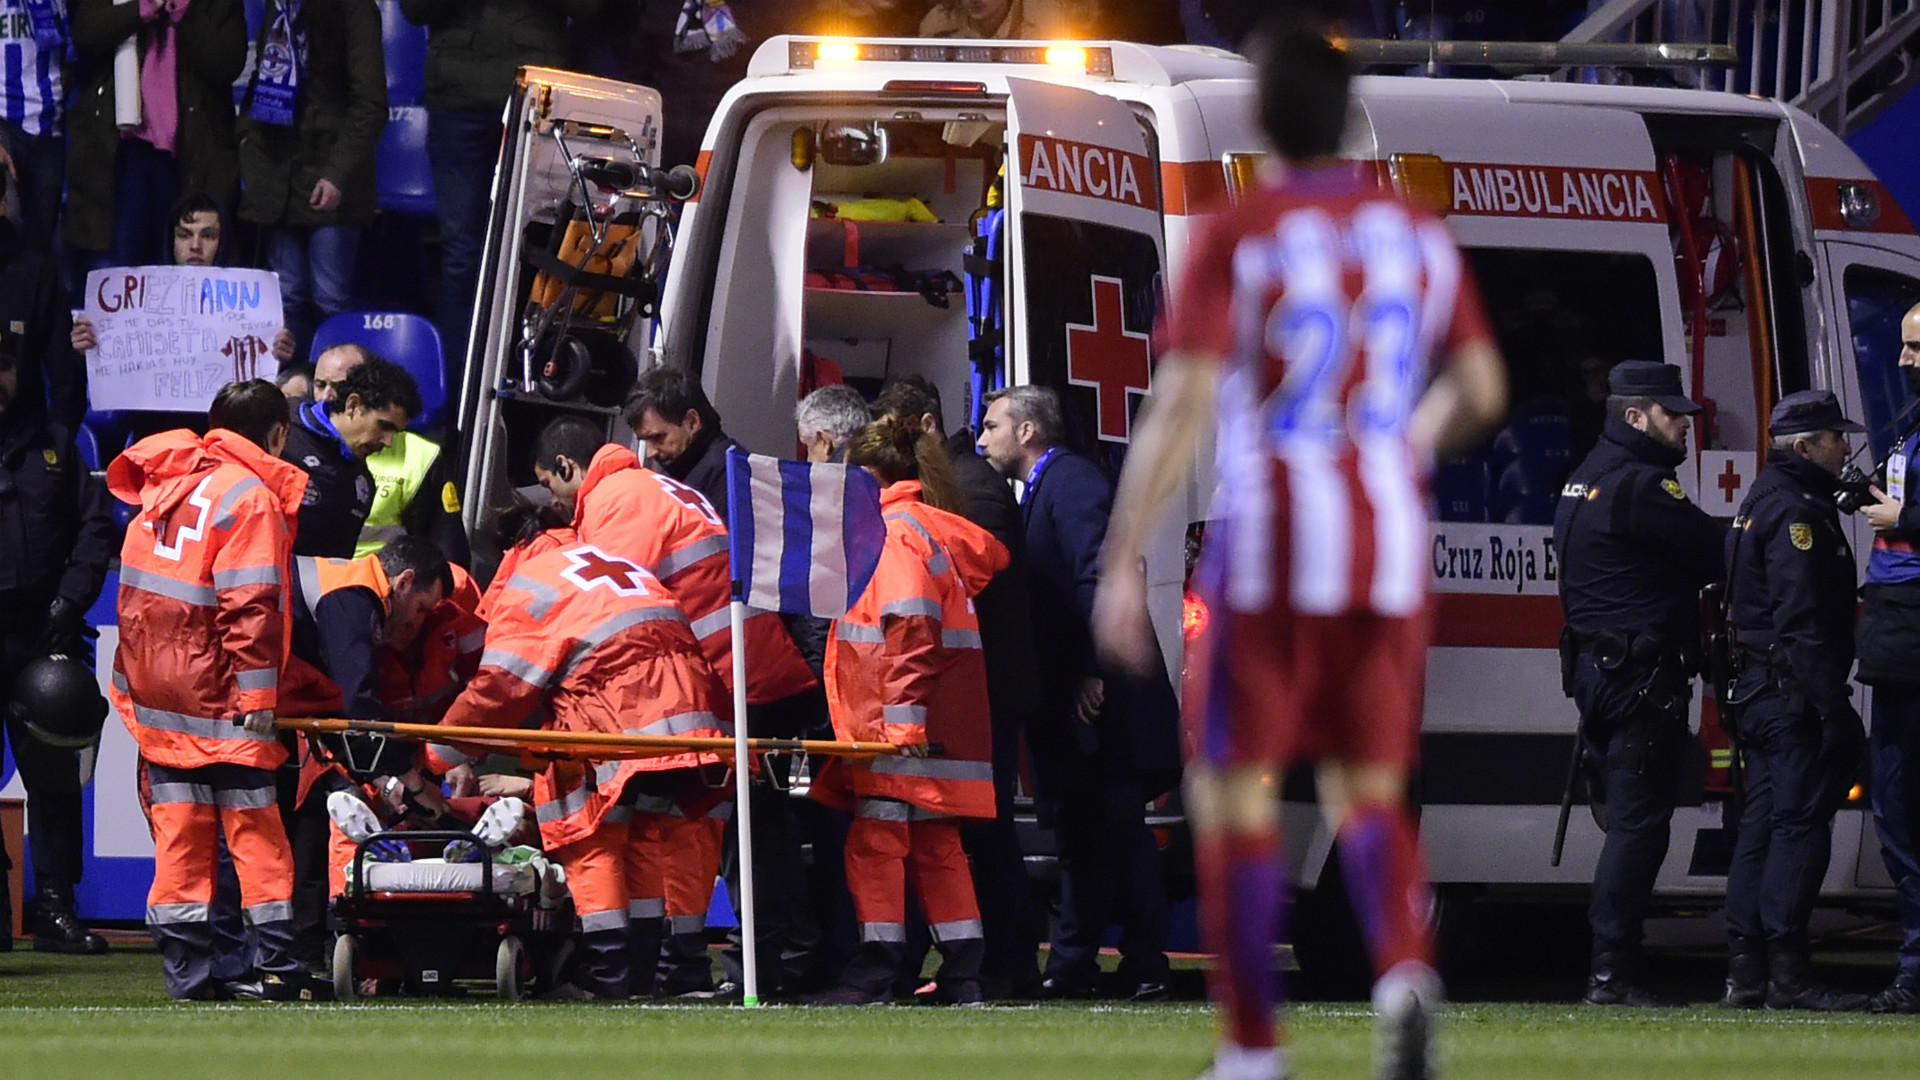 1920x1080 Fernando Torres Ambulance Atletico Madrid 2017. "